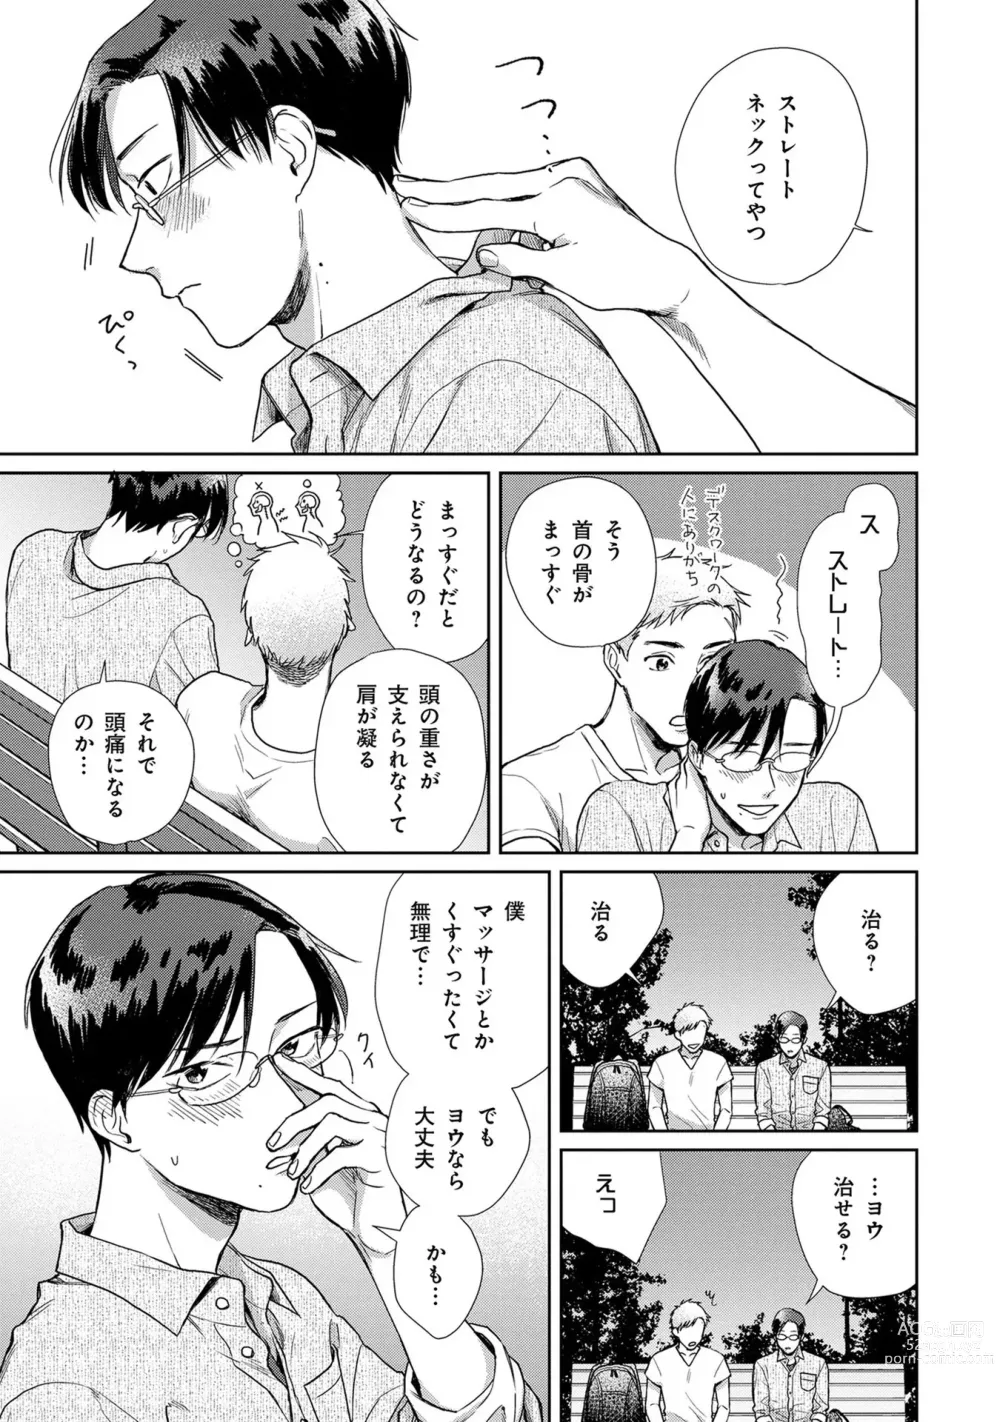 Page 14 of manga Itsukushimu, Sawo Shika no Koe